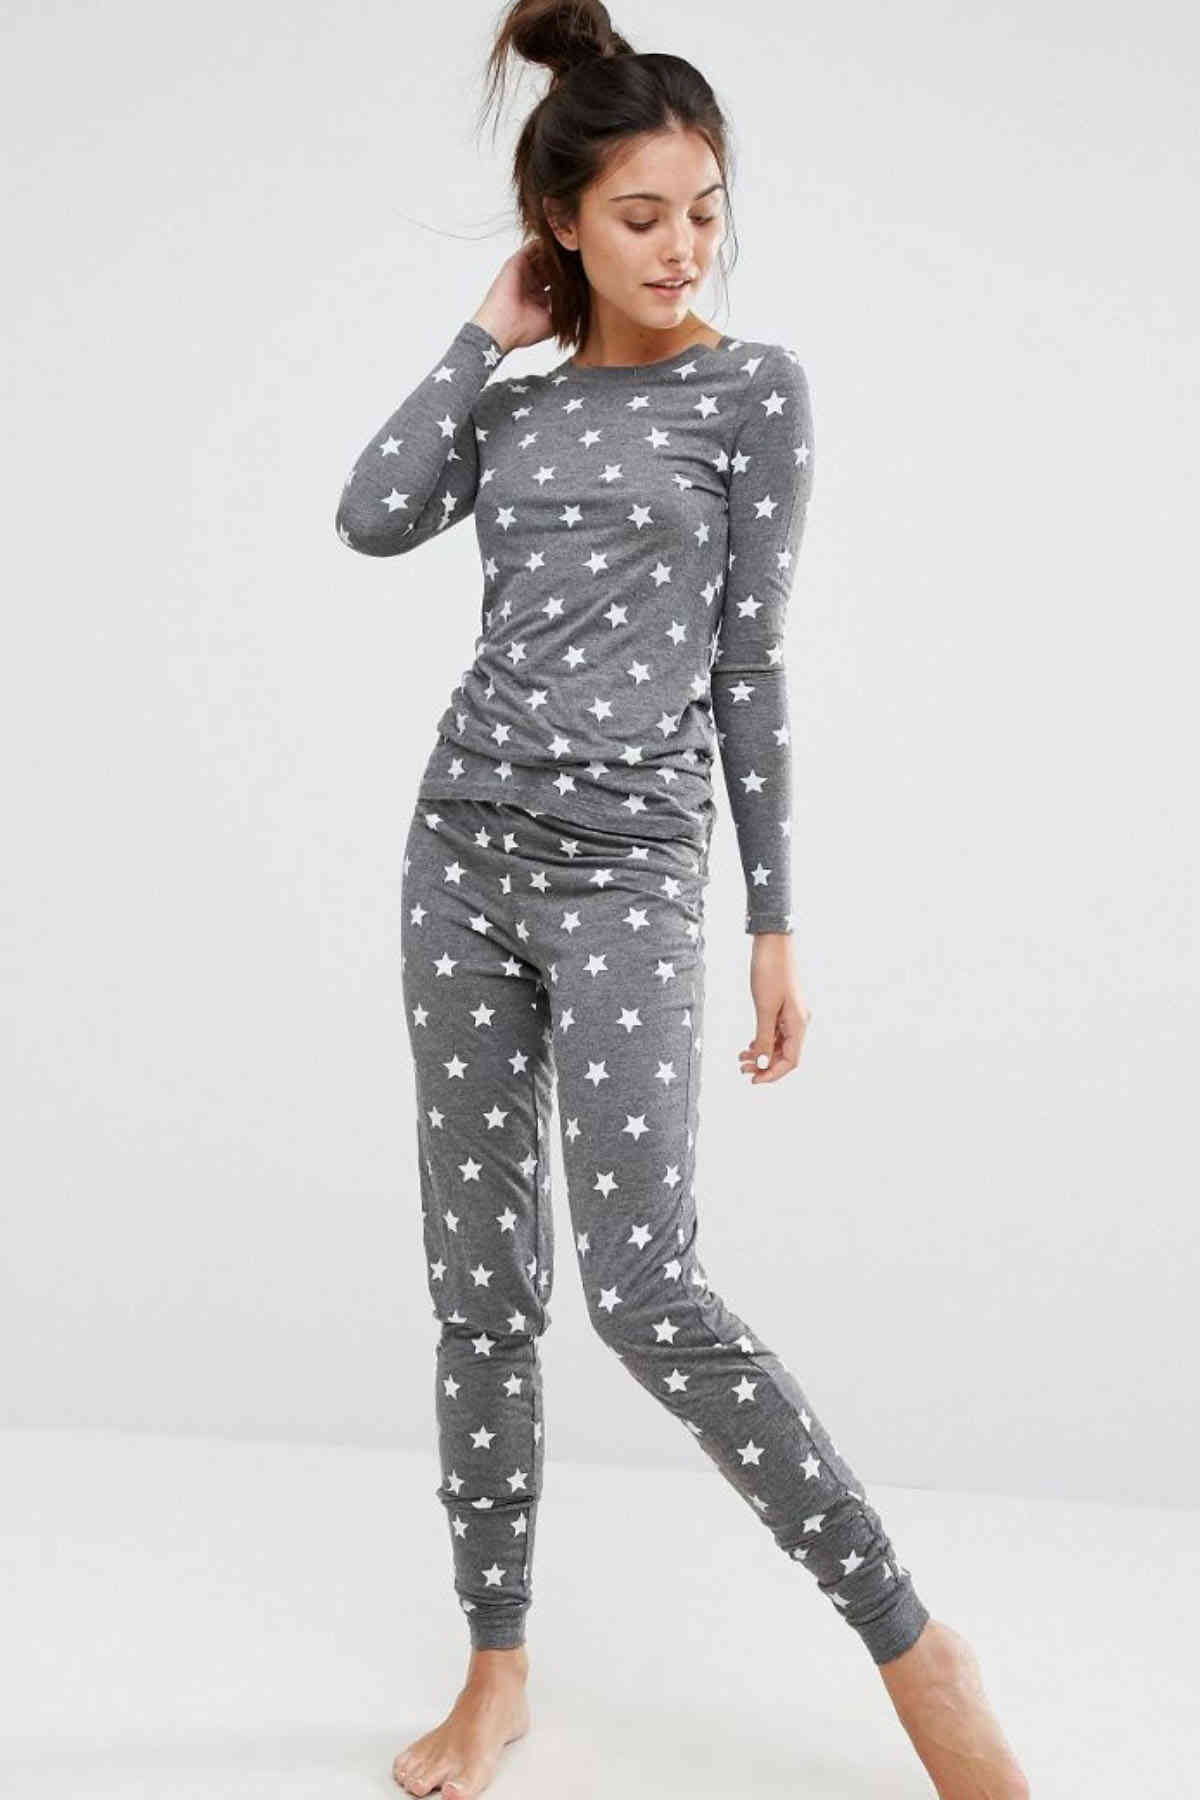 Merry See Gri Yıldız Desenli Pijama Takımı